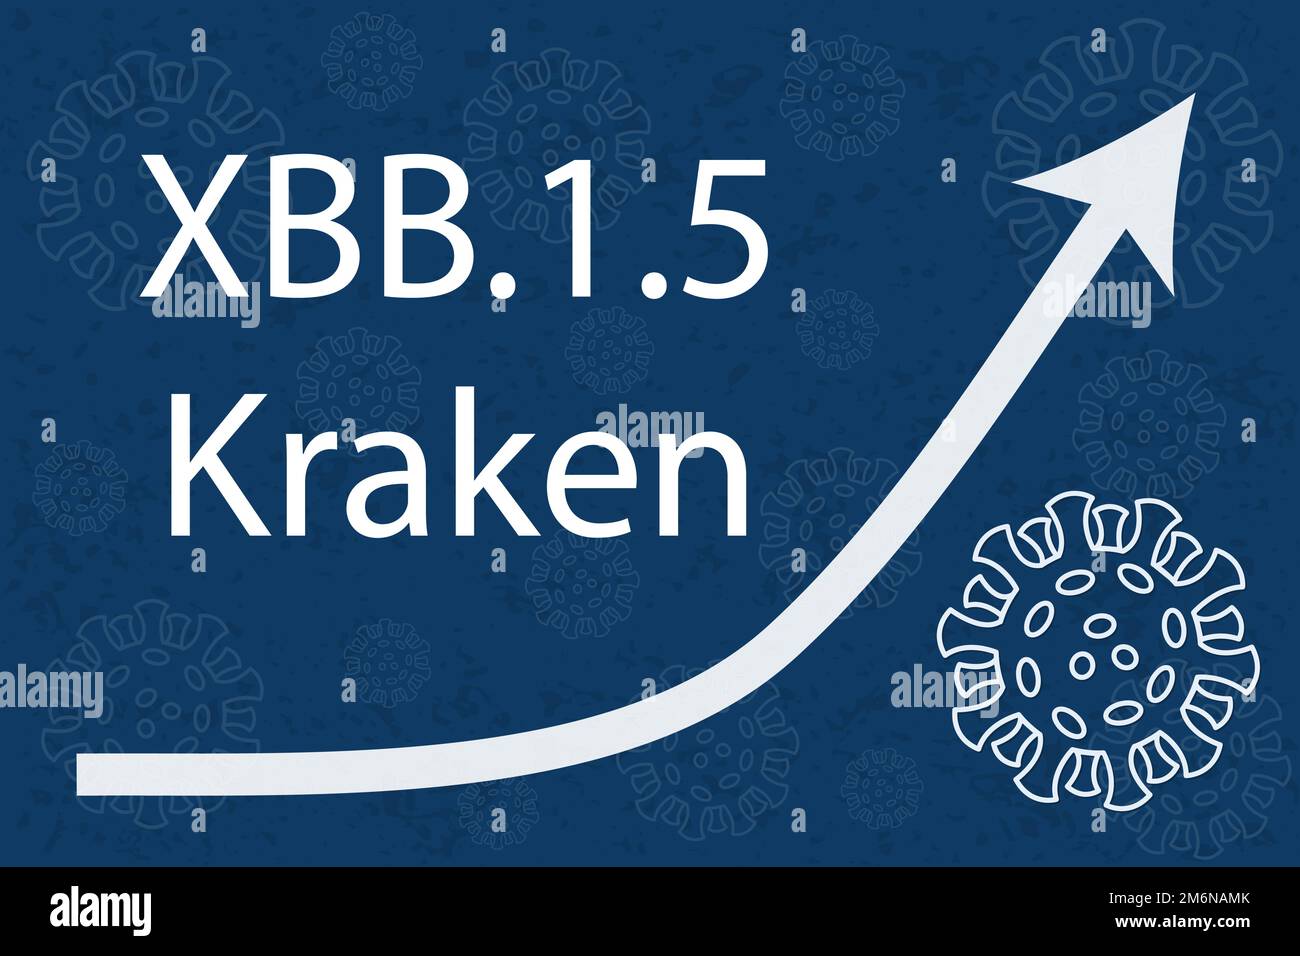 Une nouvelle sous-variante XBB.1,5 du coronavirus, surnommée Kraken, sous-traitant d'Omicron BA.2. La flèche indique une augmentation spectaculaire de la maladie. Texte blanc dans l'obscurité Illustration de Vecteur